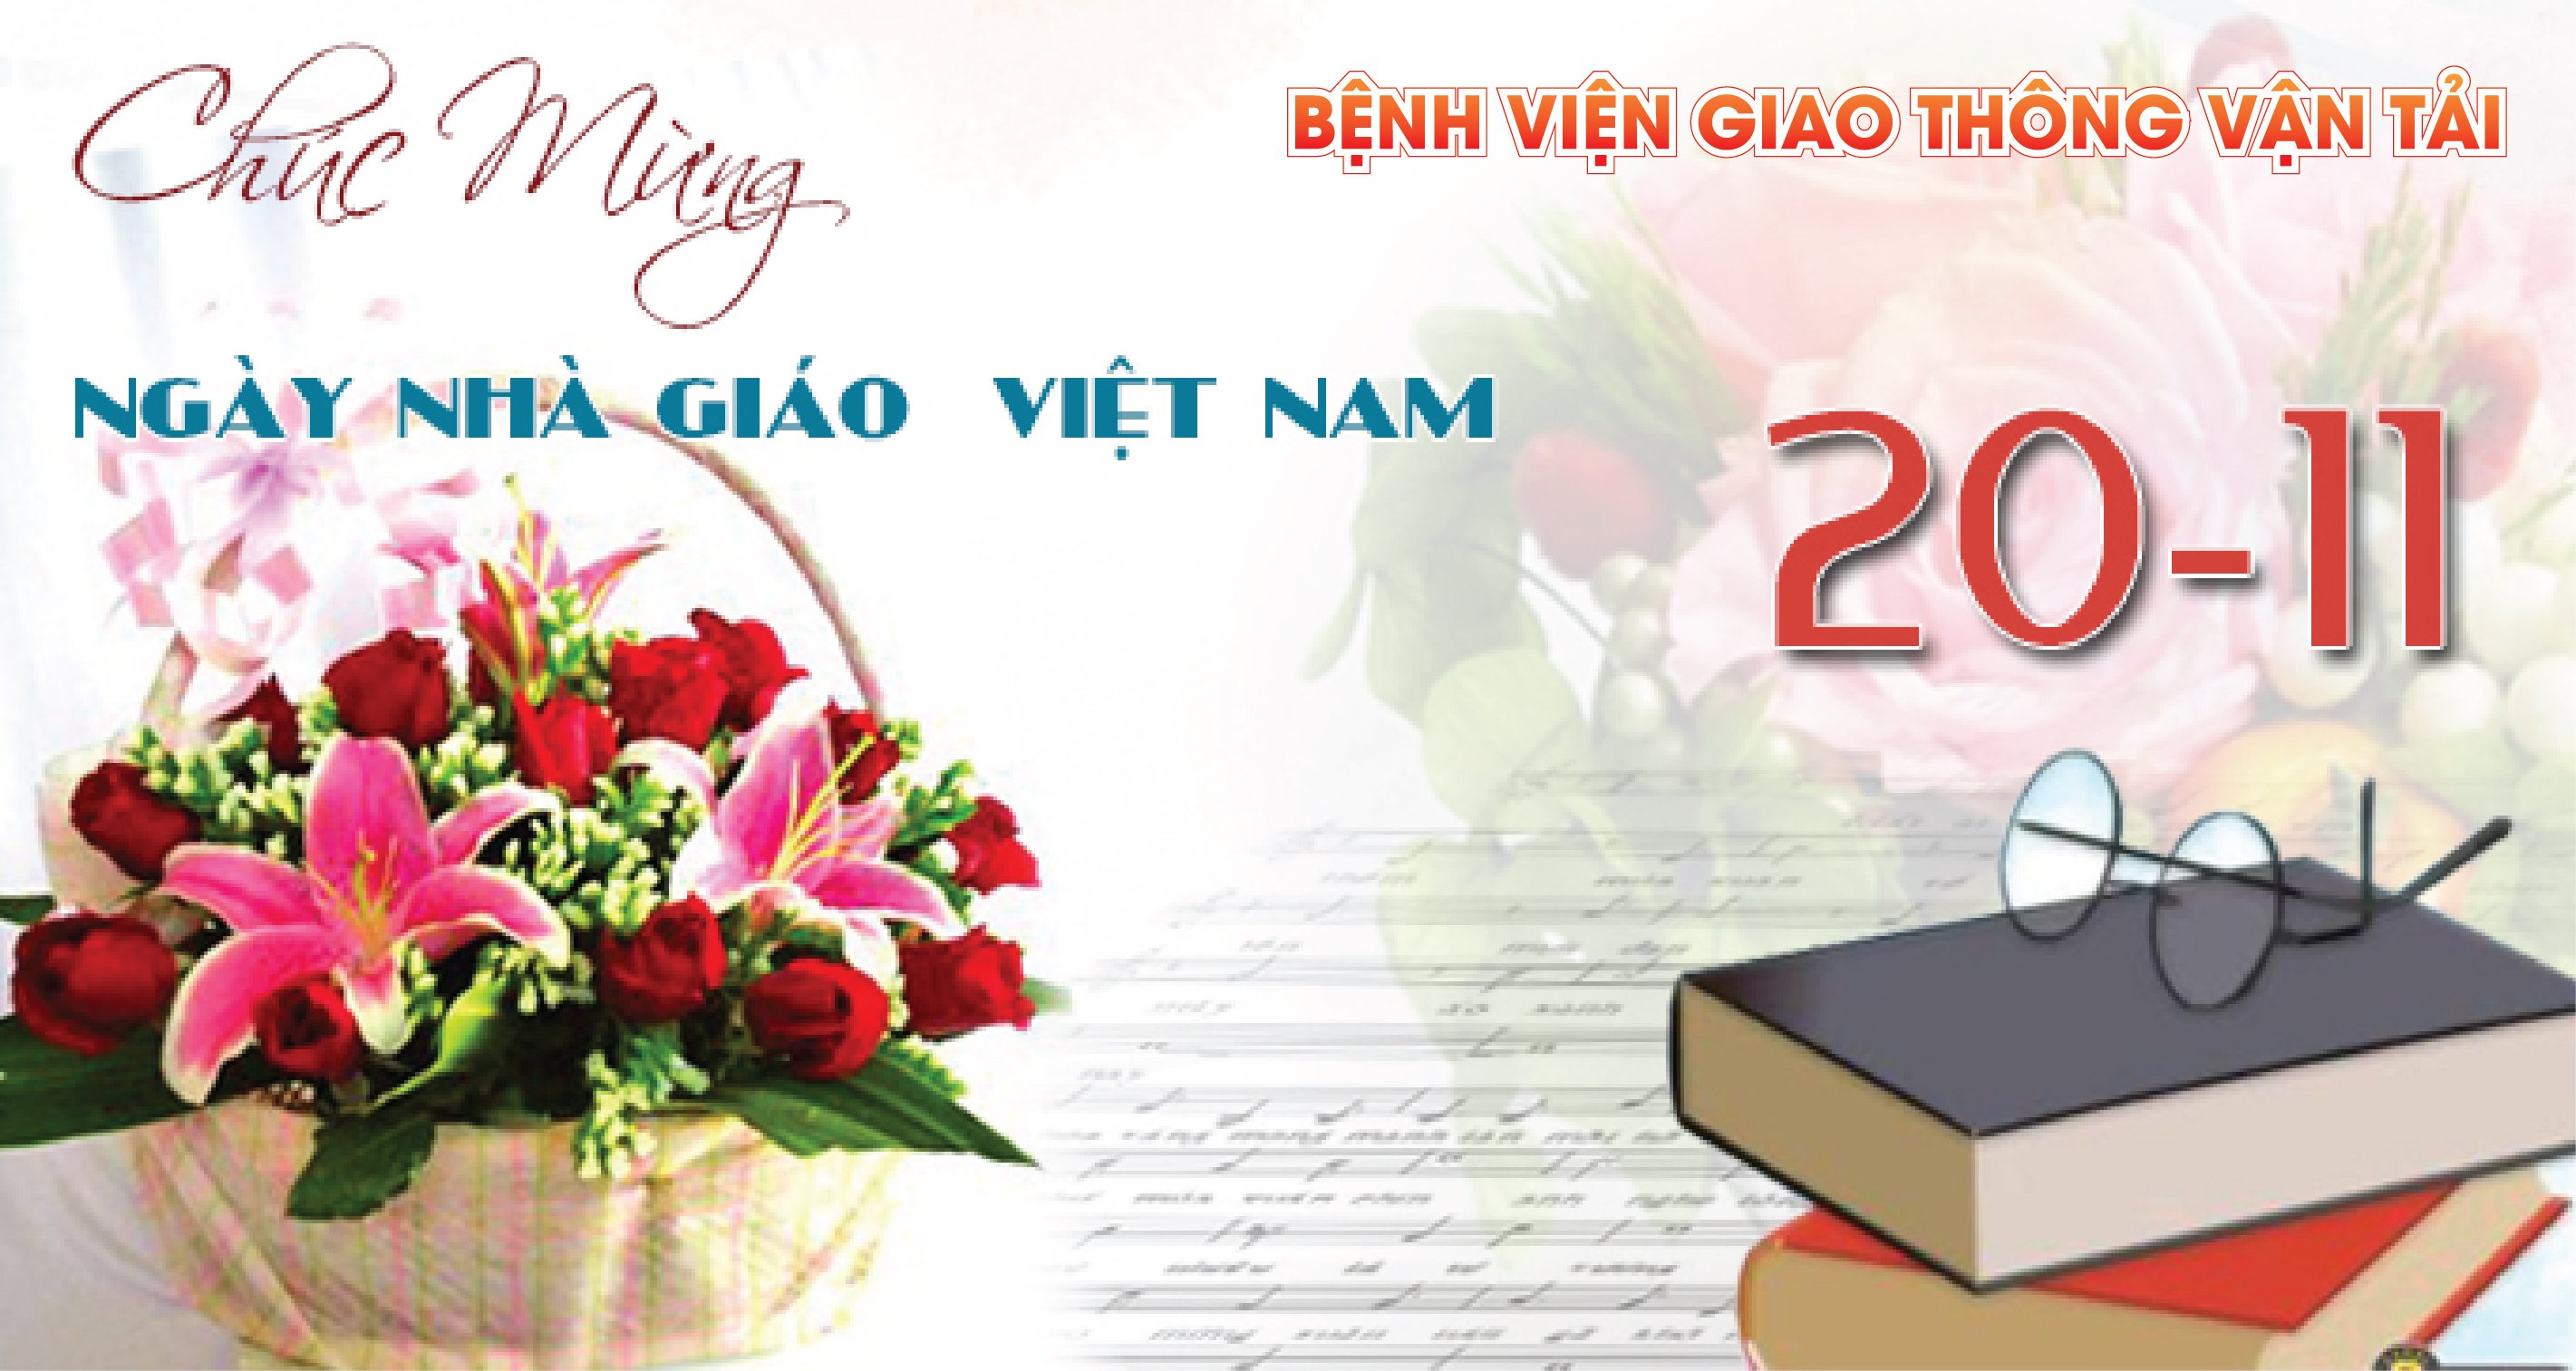 Chúc mừng, nhà giáo Việt Nam - Đó là lời chúc tốt đẹp dành cho những người đã hi sinh rất nhiều để giáo dục cho các thế hệ trẻ Việt Nam. Hãy xem hình ảnh về những lời chúc mừng, những hình ảnh trang trọng và tôn vinh các nhà giáo, để cảm nhận sự quý giá của việc giáo dục.